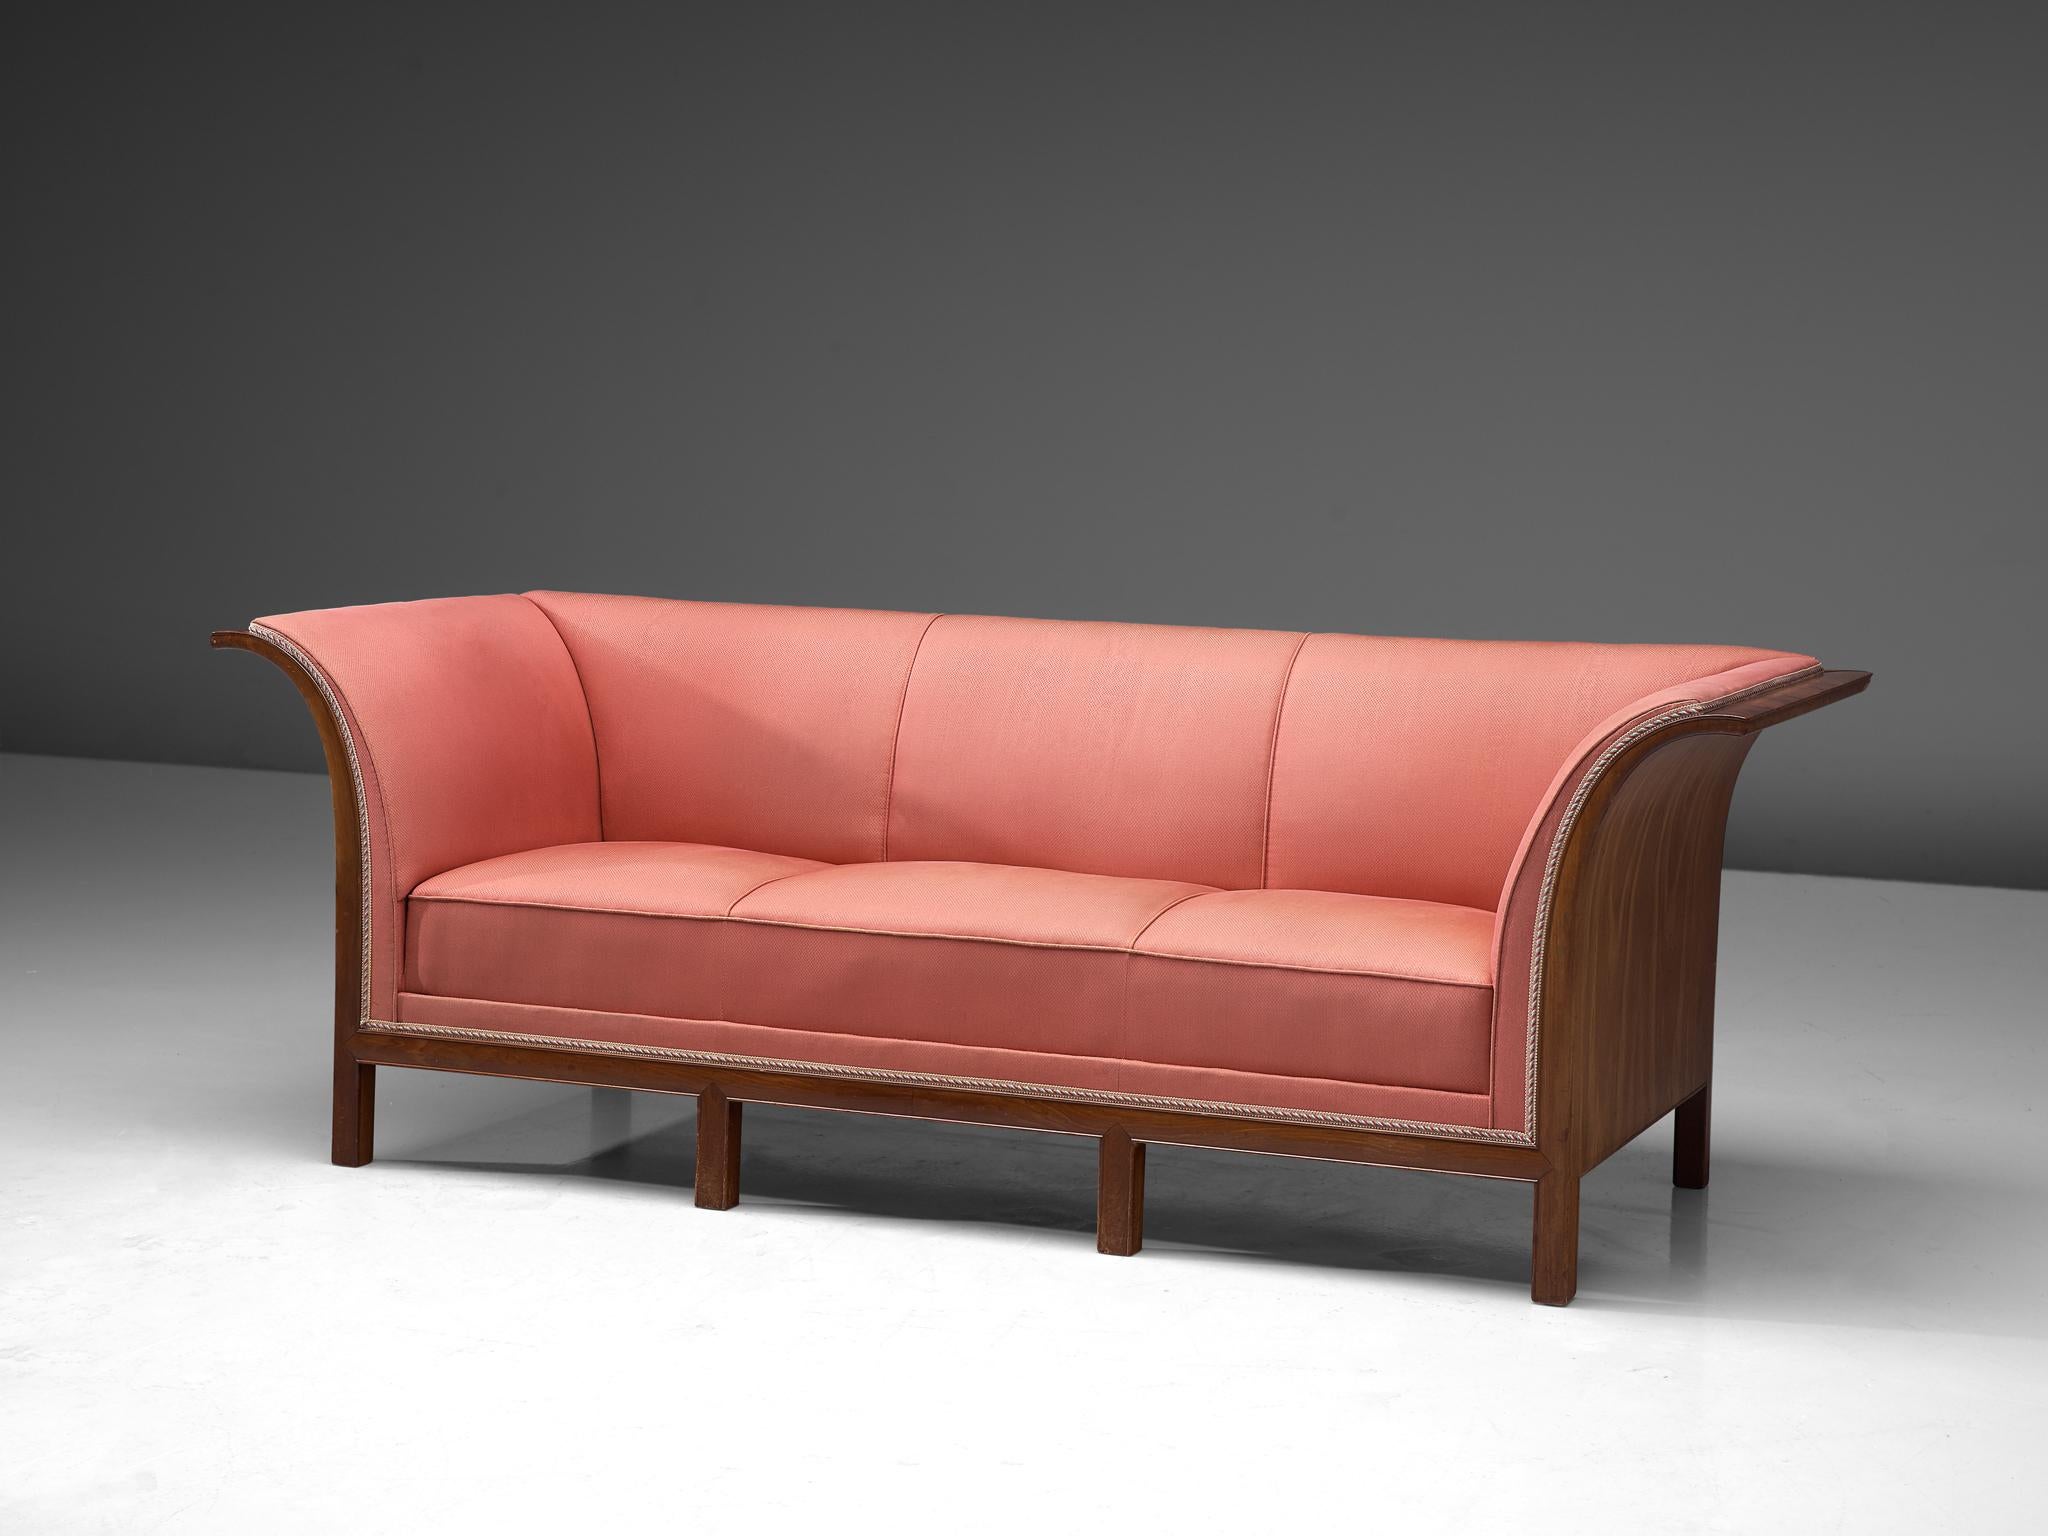 Frits Henningsen, Sofa, Mahagoni, rosa Stoff, Dänemark, 1930er Jahre

Dieses klassische Sofa wurde in den 1930er Jahren vom Tischlermeister Frits Henningsen entworfen und hergestellt. Das Grunddesign ist ausgewogen und zeigt einen interessanten